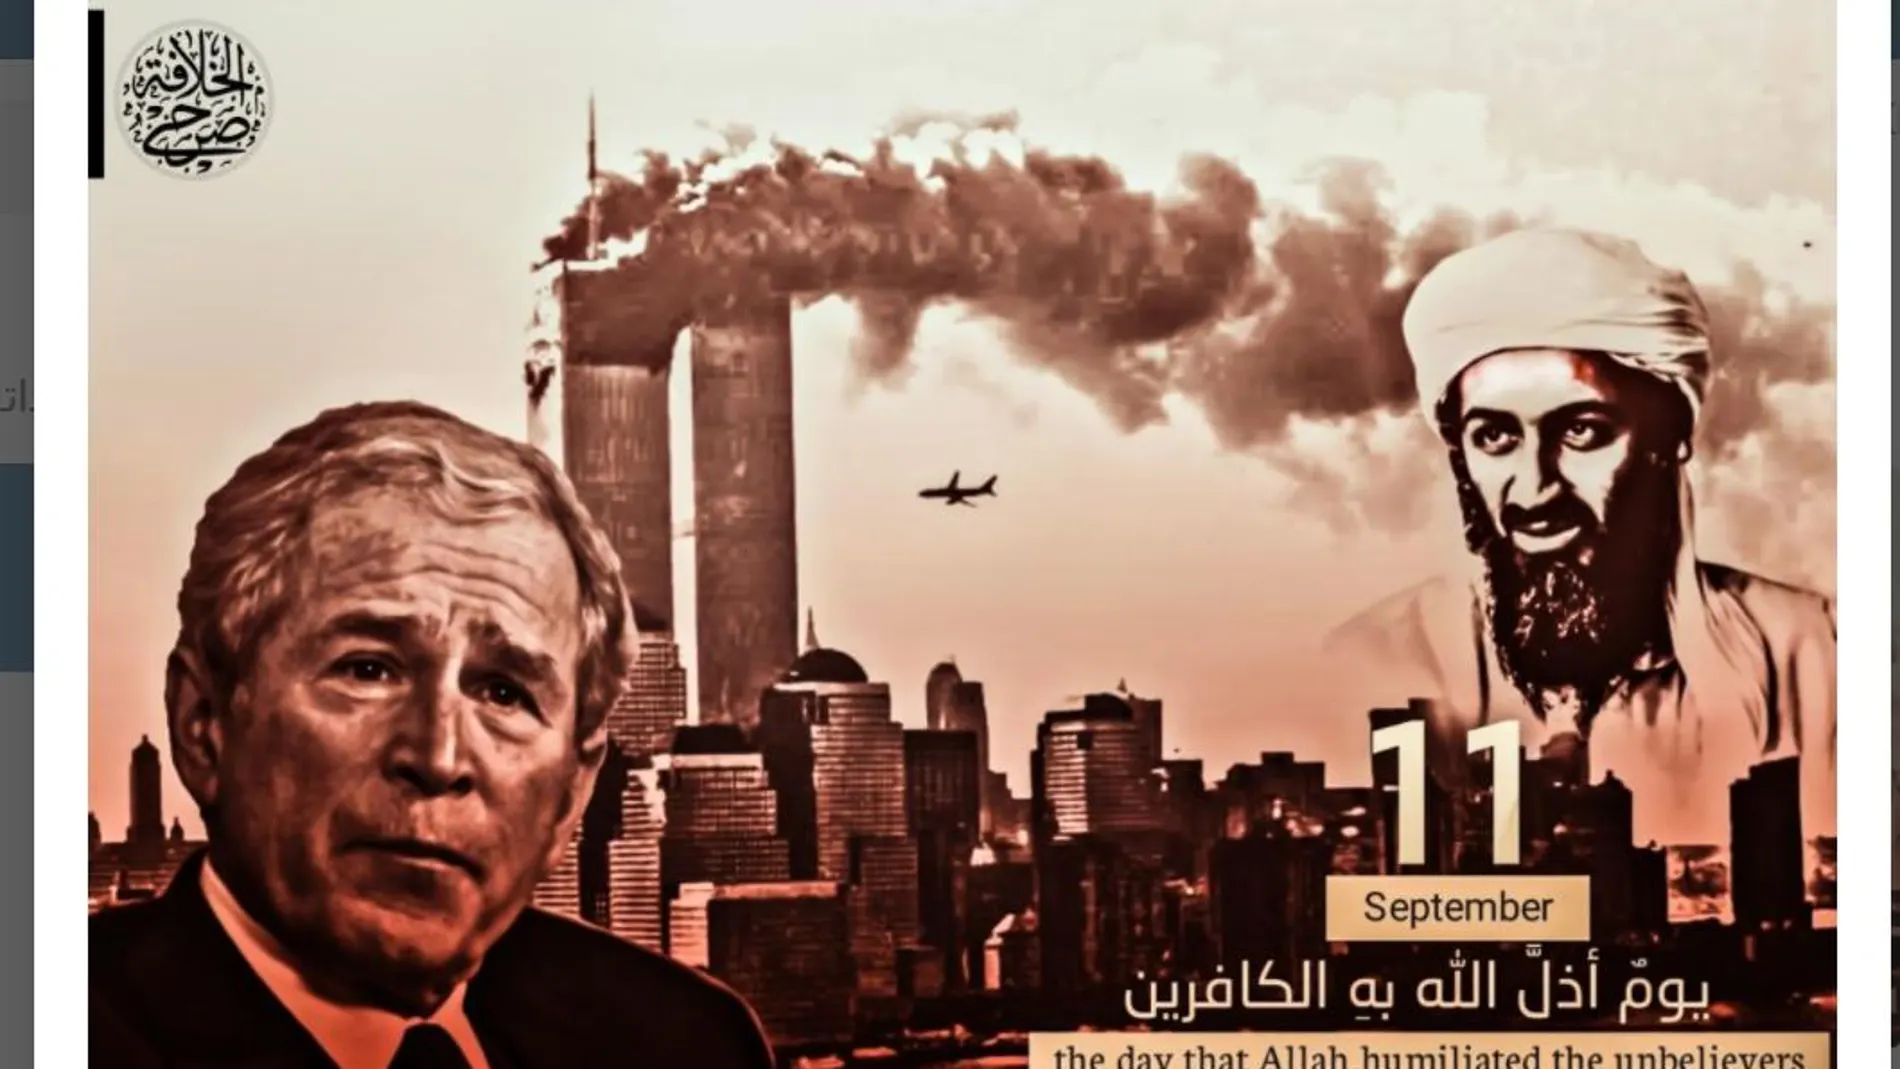 El Estado Islámico publicó ayer esta imagen en sus redes sociales para "apropiarse" del 11-S